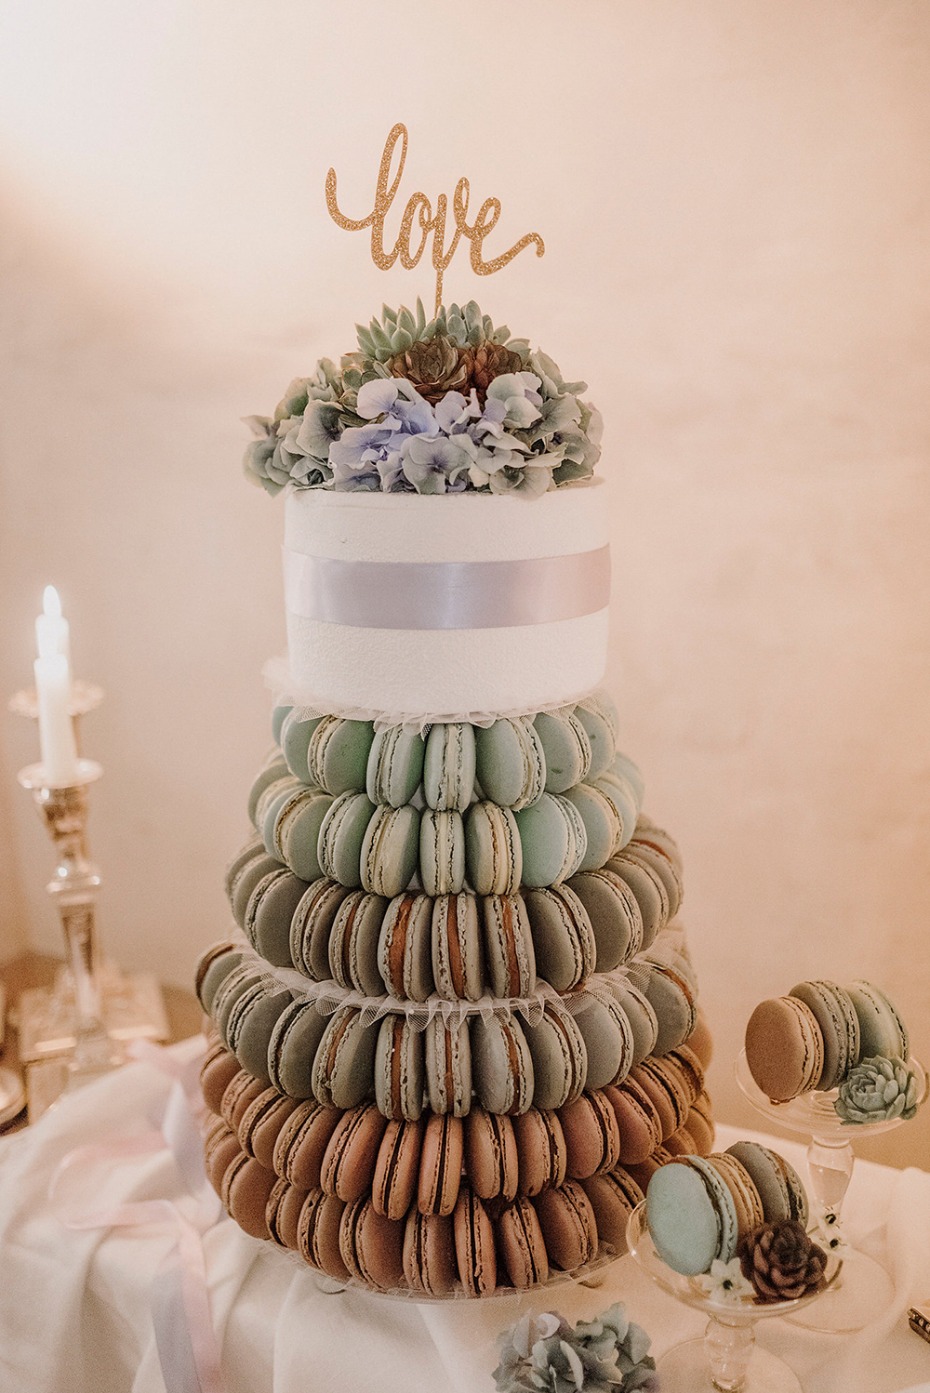 macaron tower and wedding cake